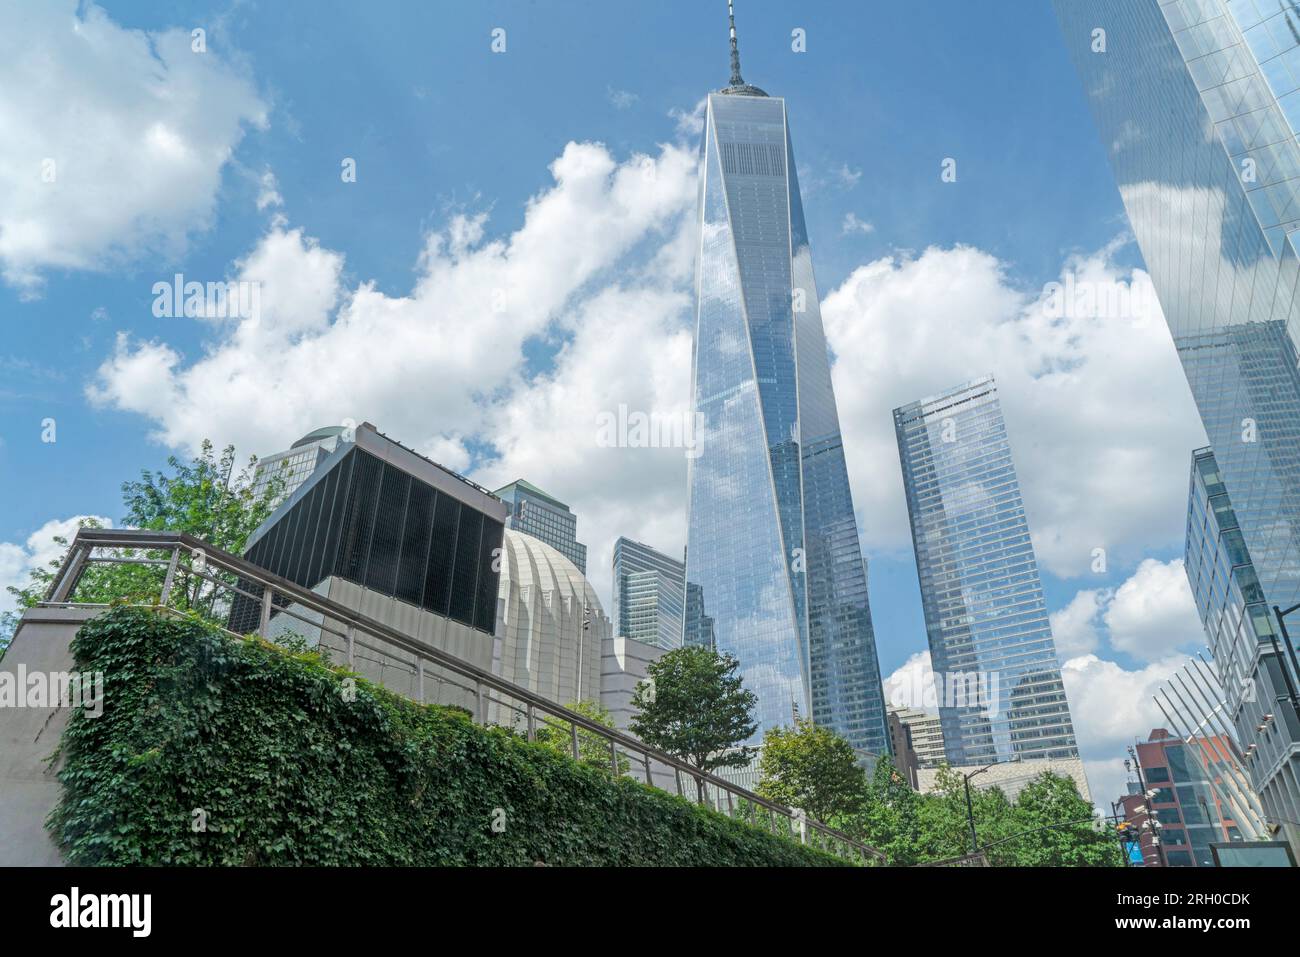 Centrés par 1 World Trade Center, de grands gratte-ciel ont été érigés sur le site du World Trade Center avec l'Oculus et le St. Nicholas Church. Banque D'Images